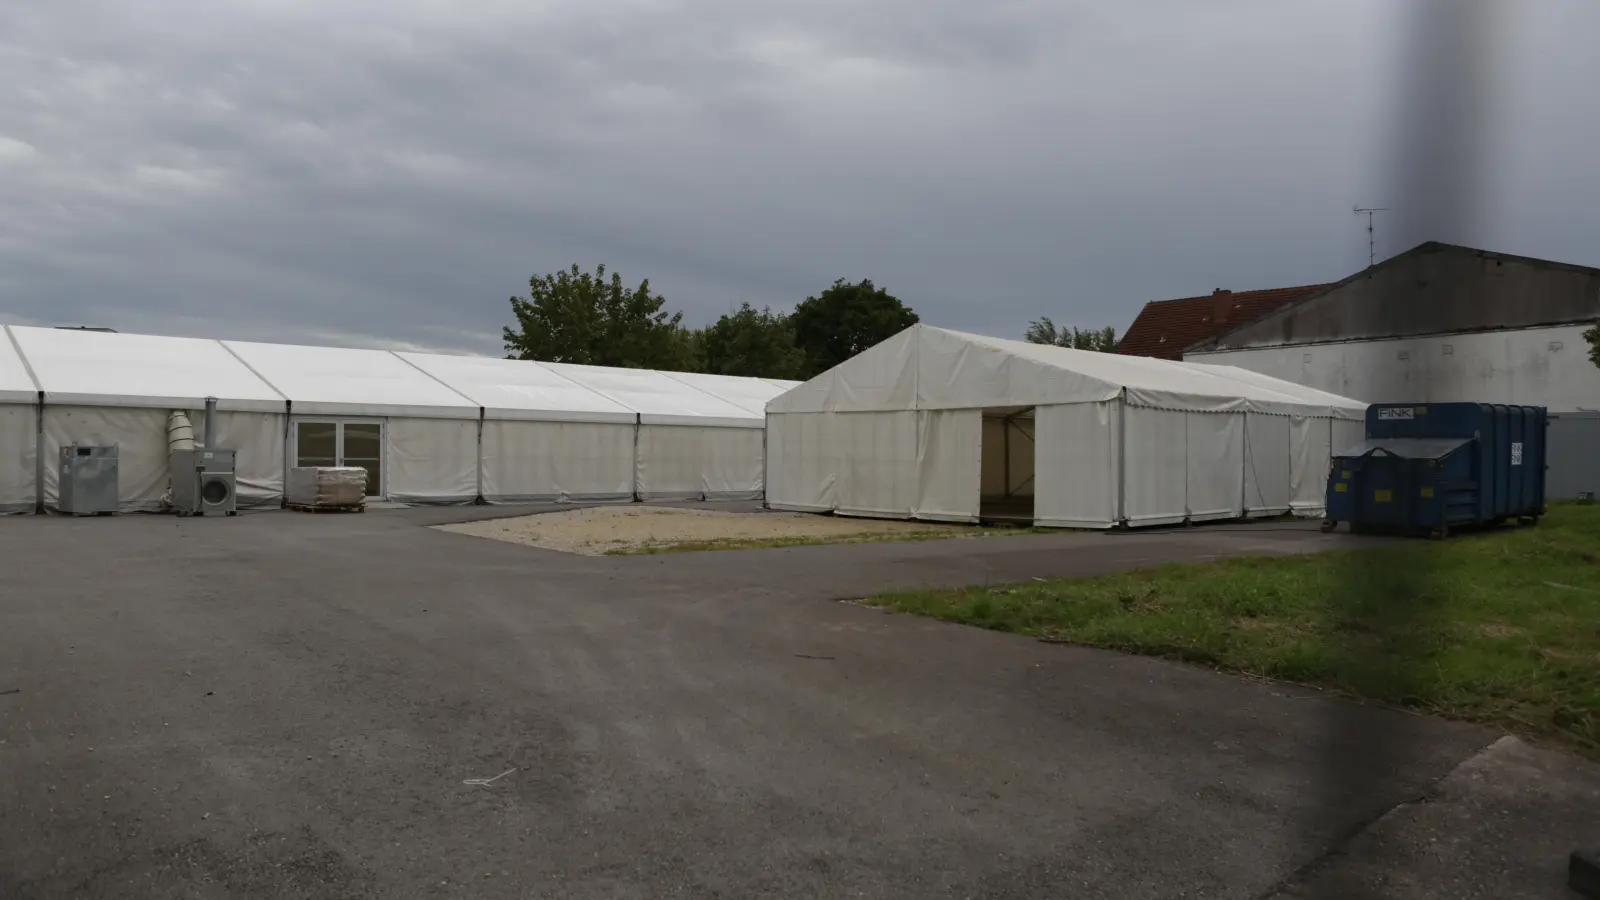 <b>Wo sich Bürger</b> des Landkreises Dachau 2022 noch auf das Coronavirus SARS-CoV-2 testen lassen konnten, stehen jetzt Zelte für Geflüchtete. Derzeit sind sie noch leer. Der Landkreis nutzt die Liegenschaft an der Heinrich-Lanz-Straße in Indersdorf als Puffer. (Foto: Bastian Brummer)